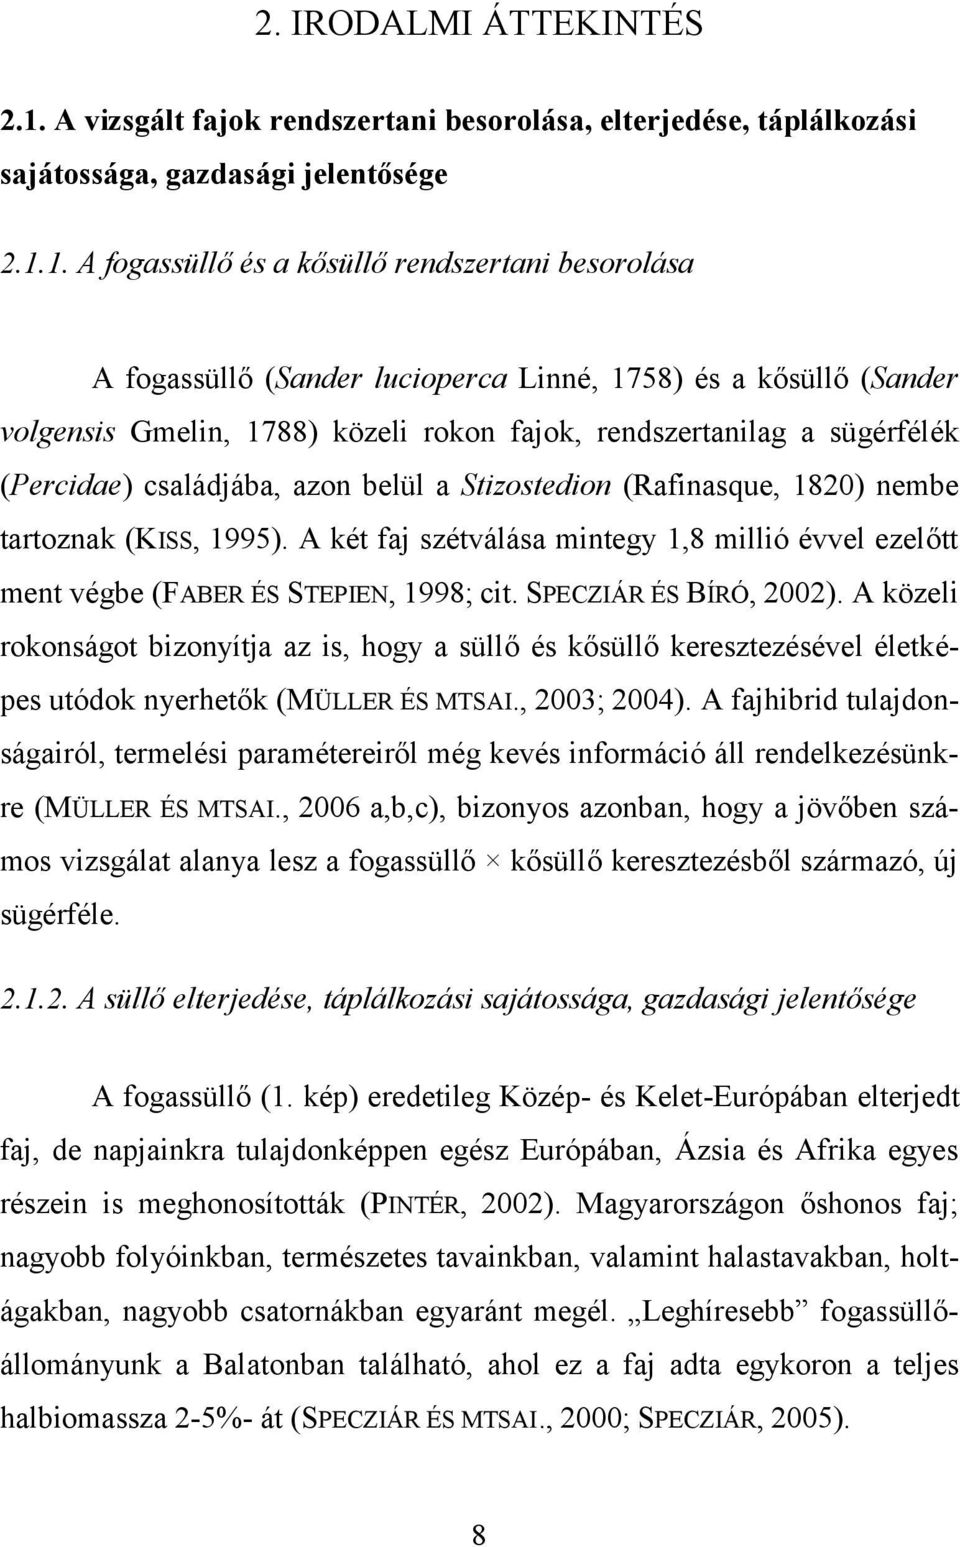 1. A fogassüllő és a kősüllő rendszertani besorolása A fogassüllő (Sander lucioperca Linné, 1758) és a kősüllő (Sander volgensis Gmelin, 1788) közeli rokon fajok, rendszertanilag a sügérfélék